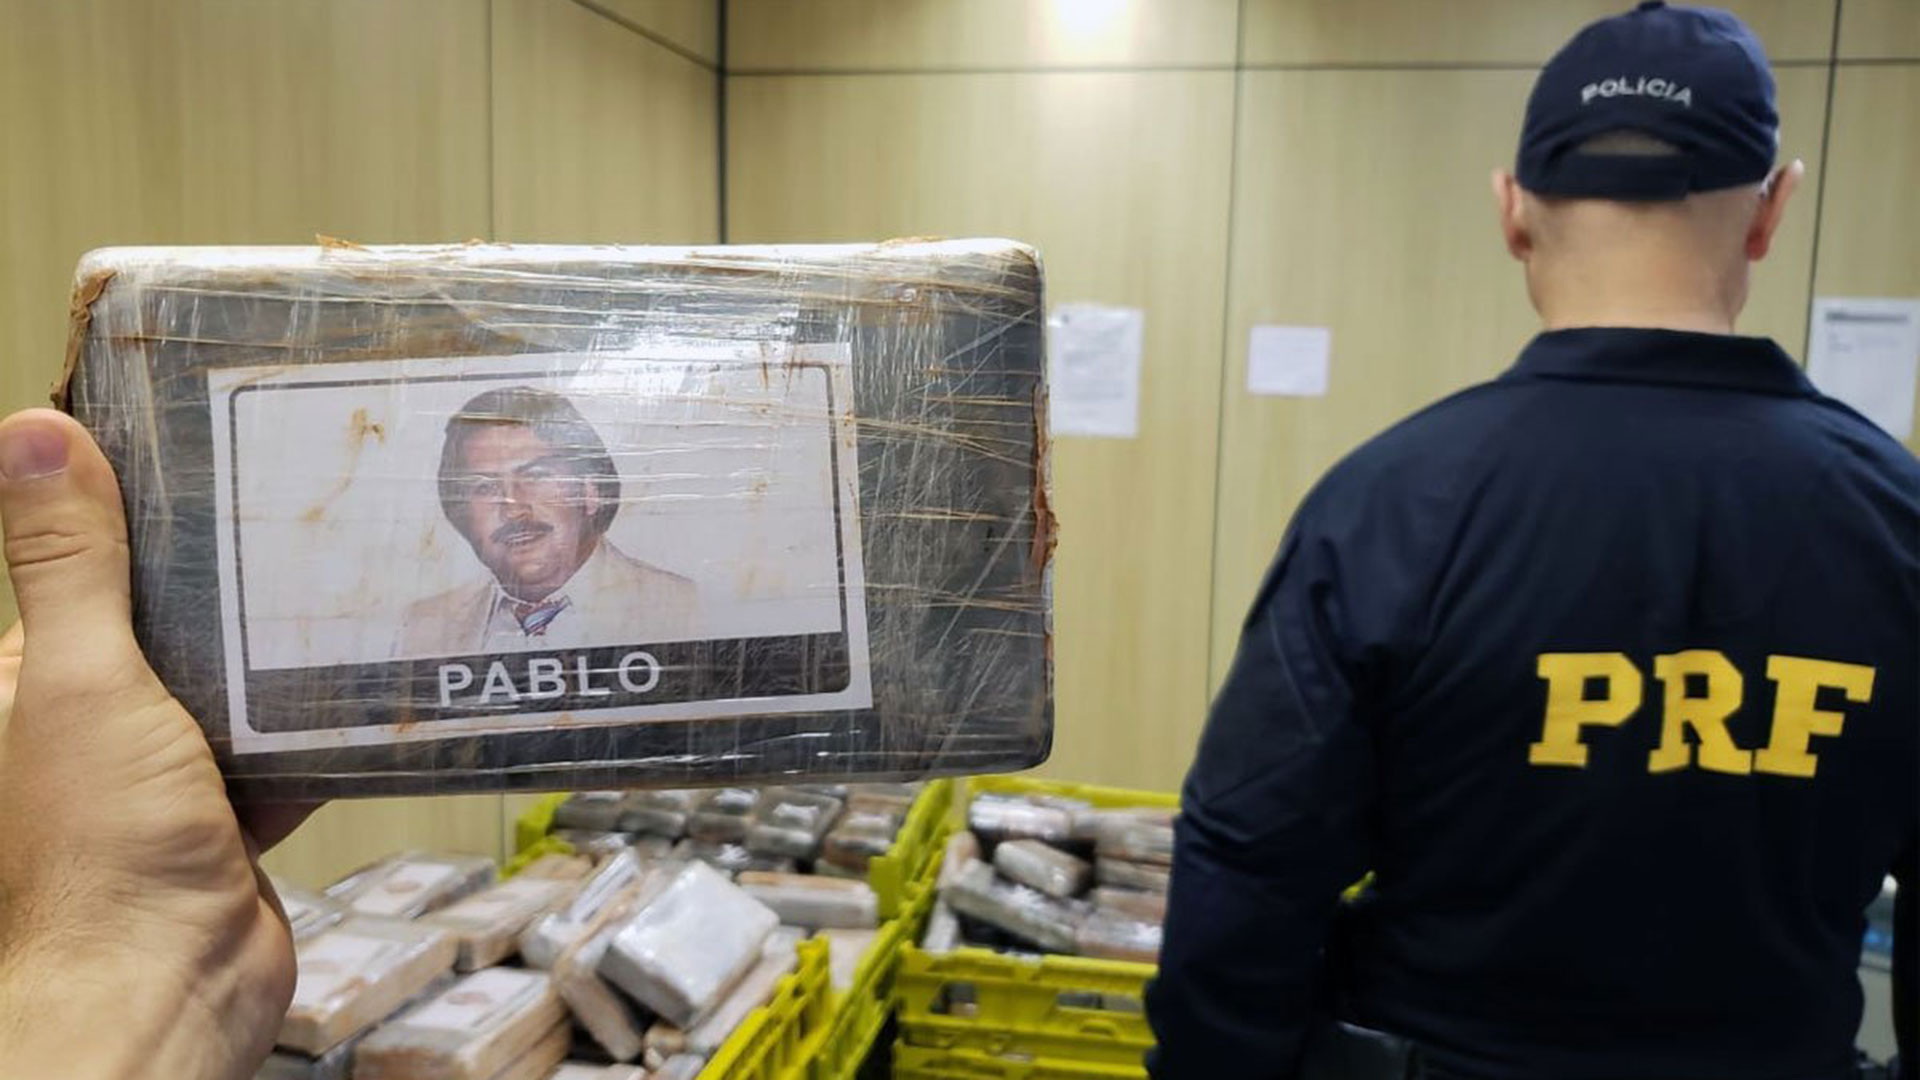 Incautaron cocaína en paquetes  con fotos de Pablo Escobar en Brasil